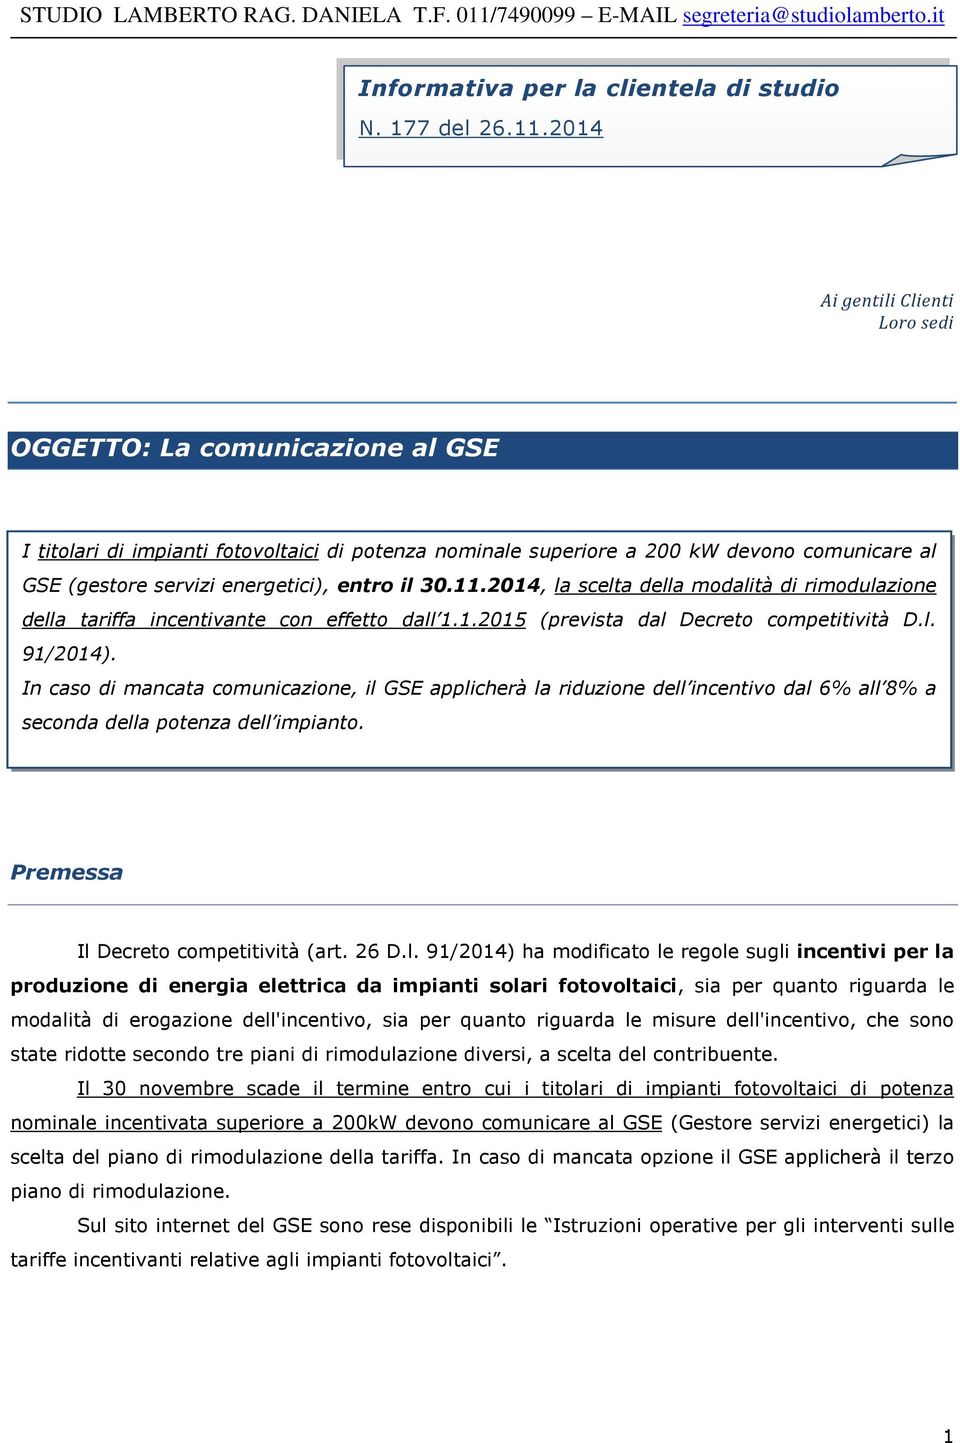 entro il 30.11.2014, la scelta della modalità di rimodulazione della tariffa incentivante con effetto dall 1.1.2015 (prevista dal Decreto competitività D.l. 91/2014).